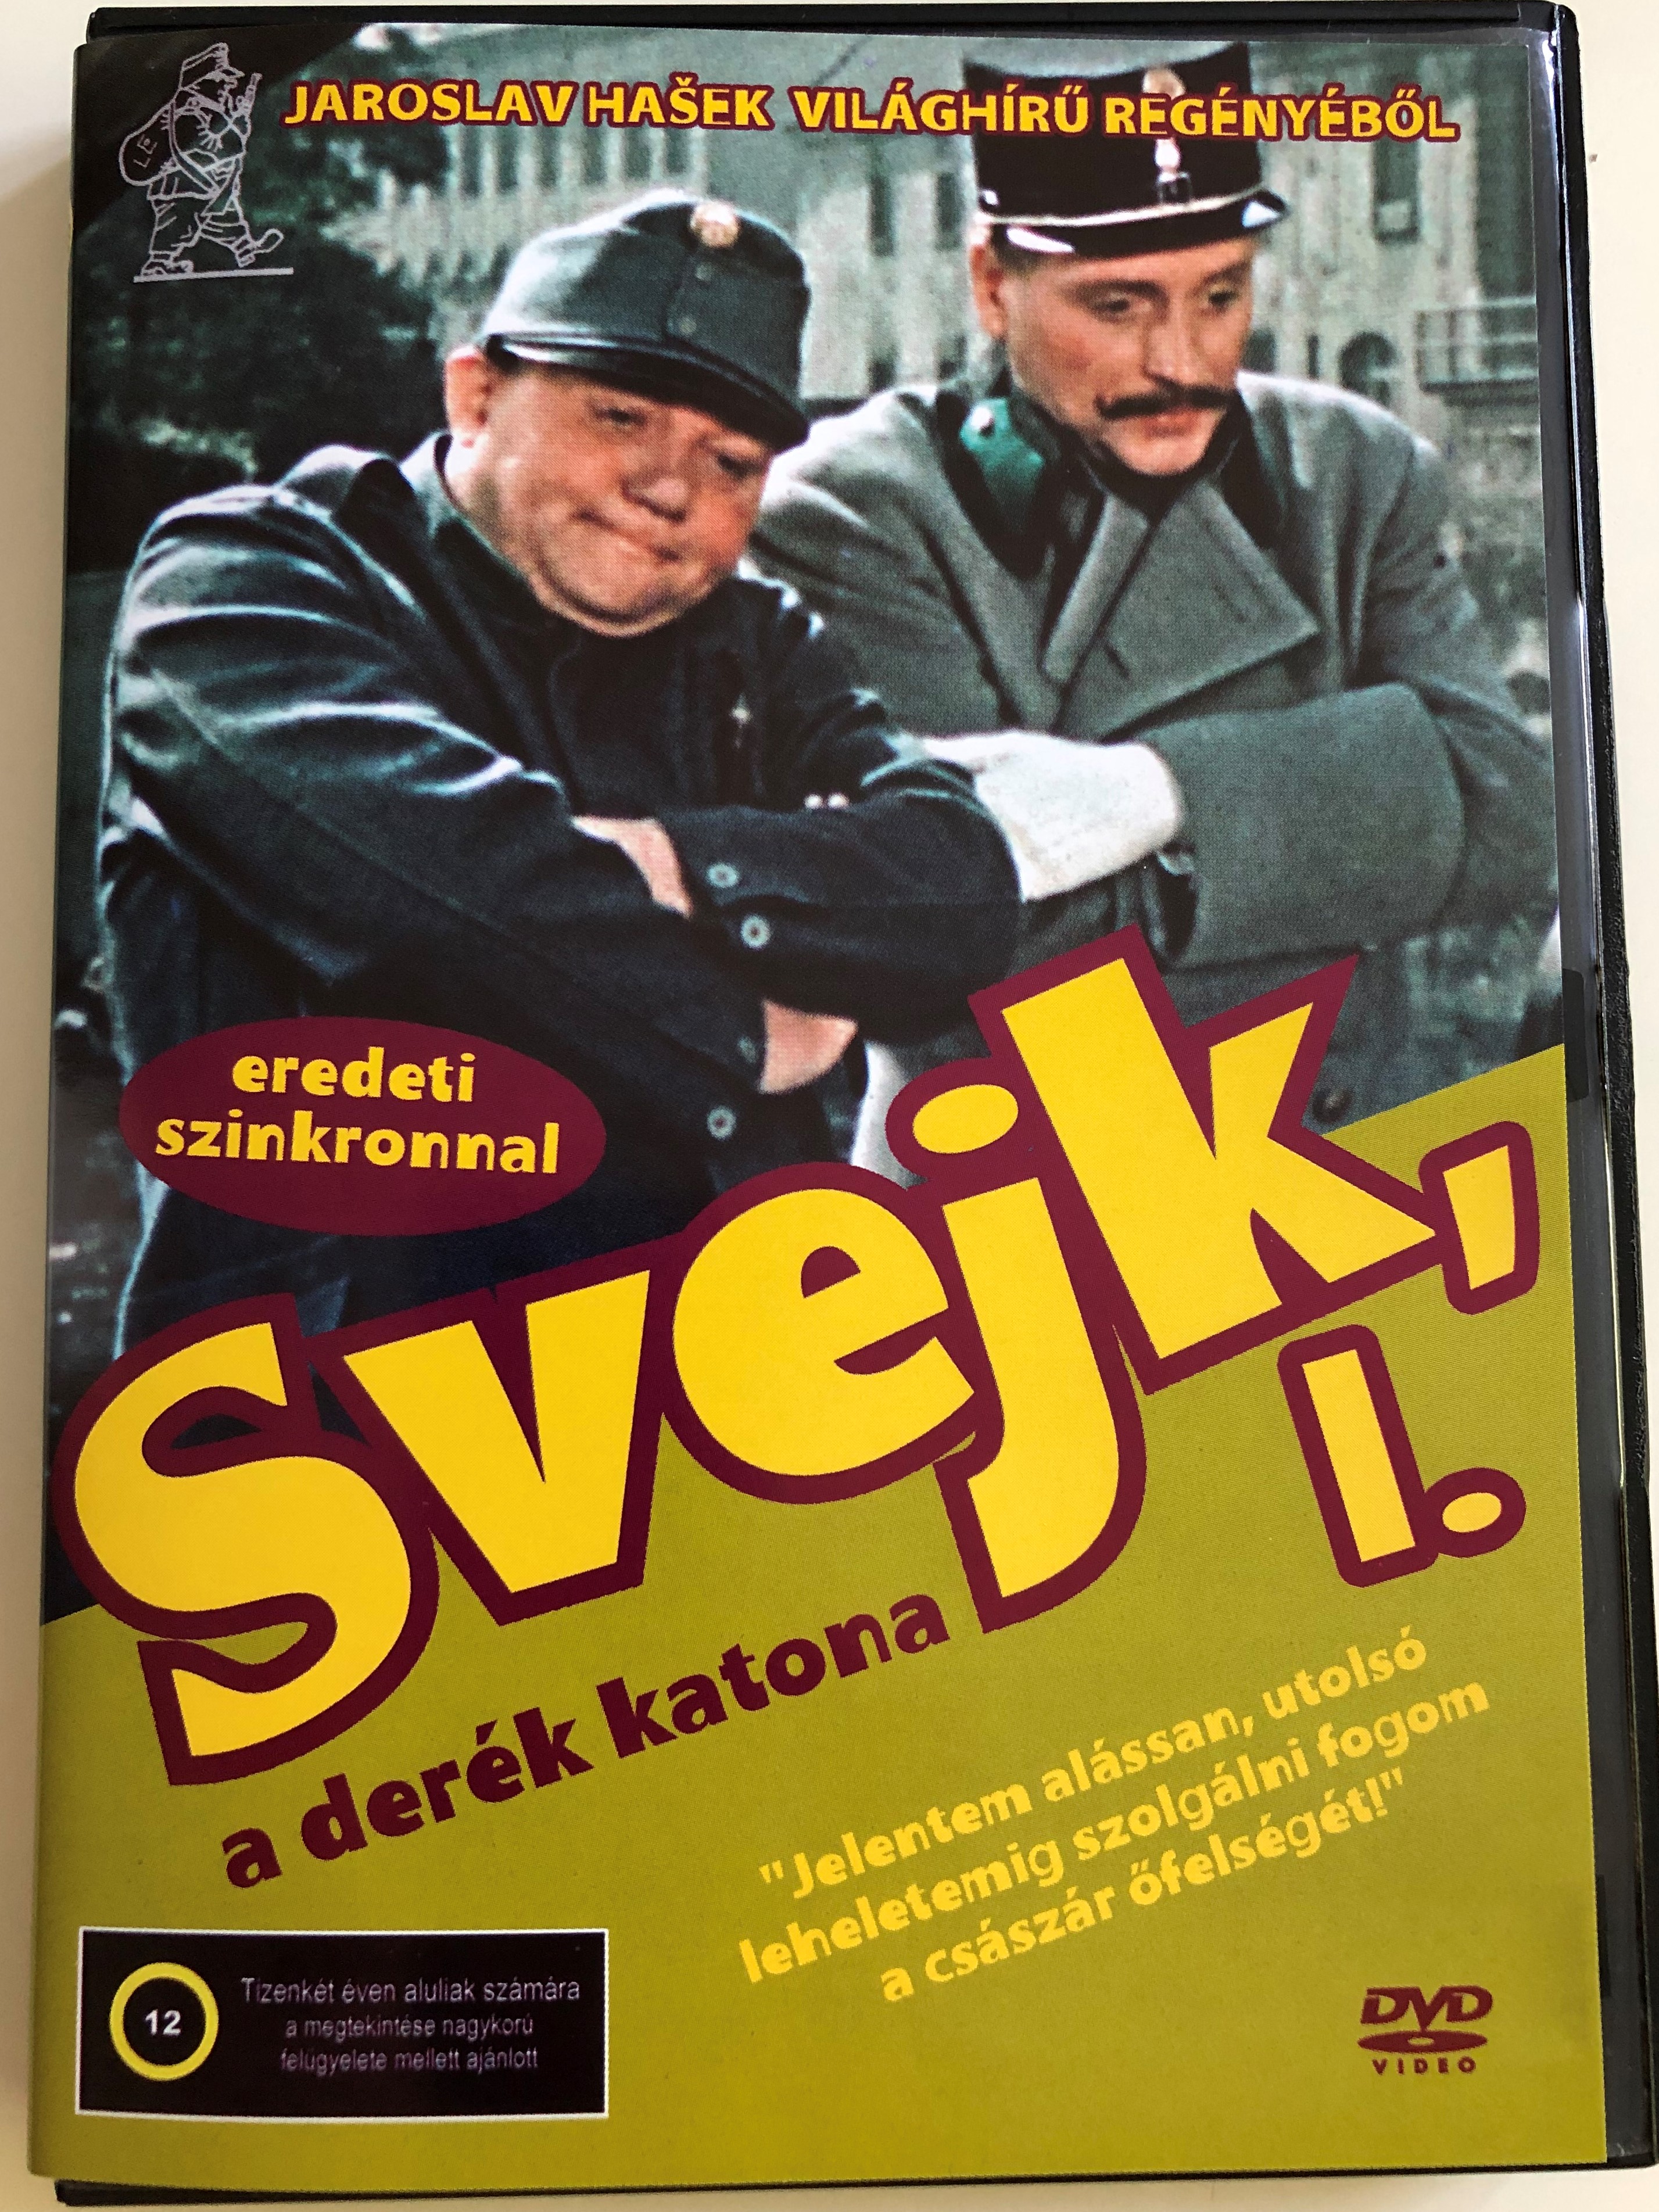 dobry-voj-k-svejk-dvd-1956-svejk-a-der-k-katona-directed-by-karel-stekly-starring-rudolf-hrusinsky-svatopluk-benes-frantisek-filipovsky-bozena-havlickov-1-.jpg